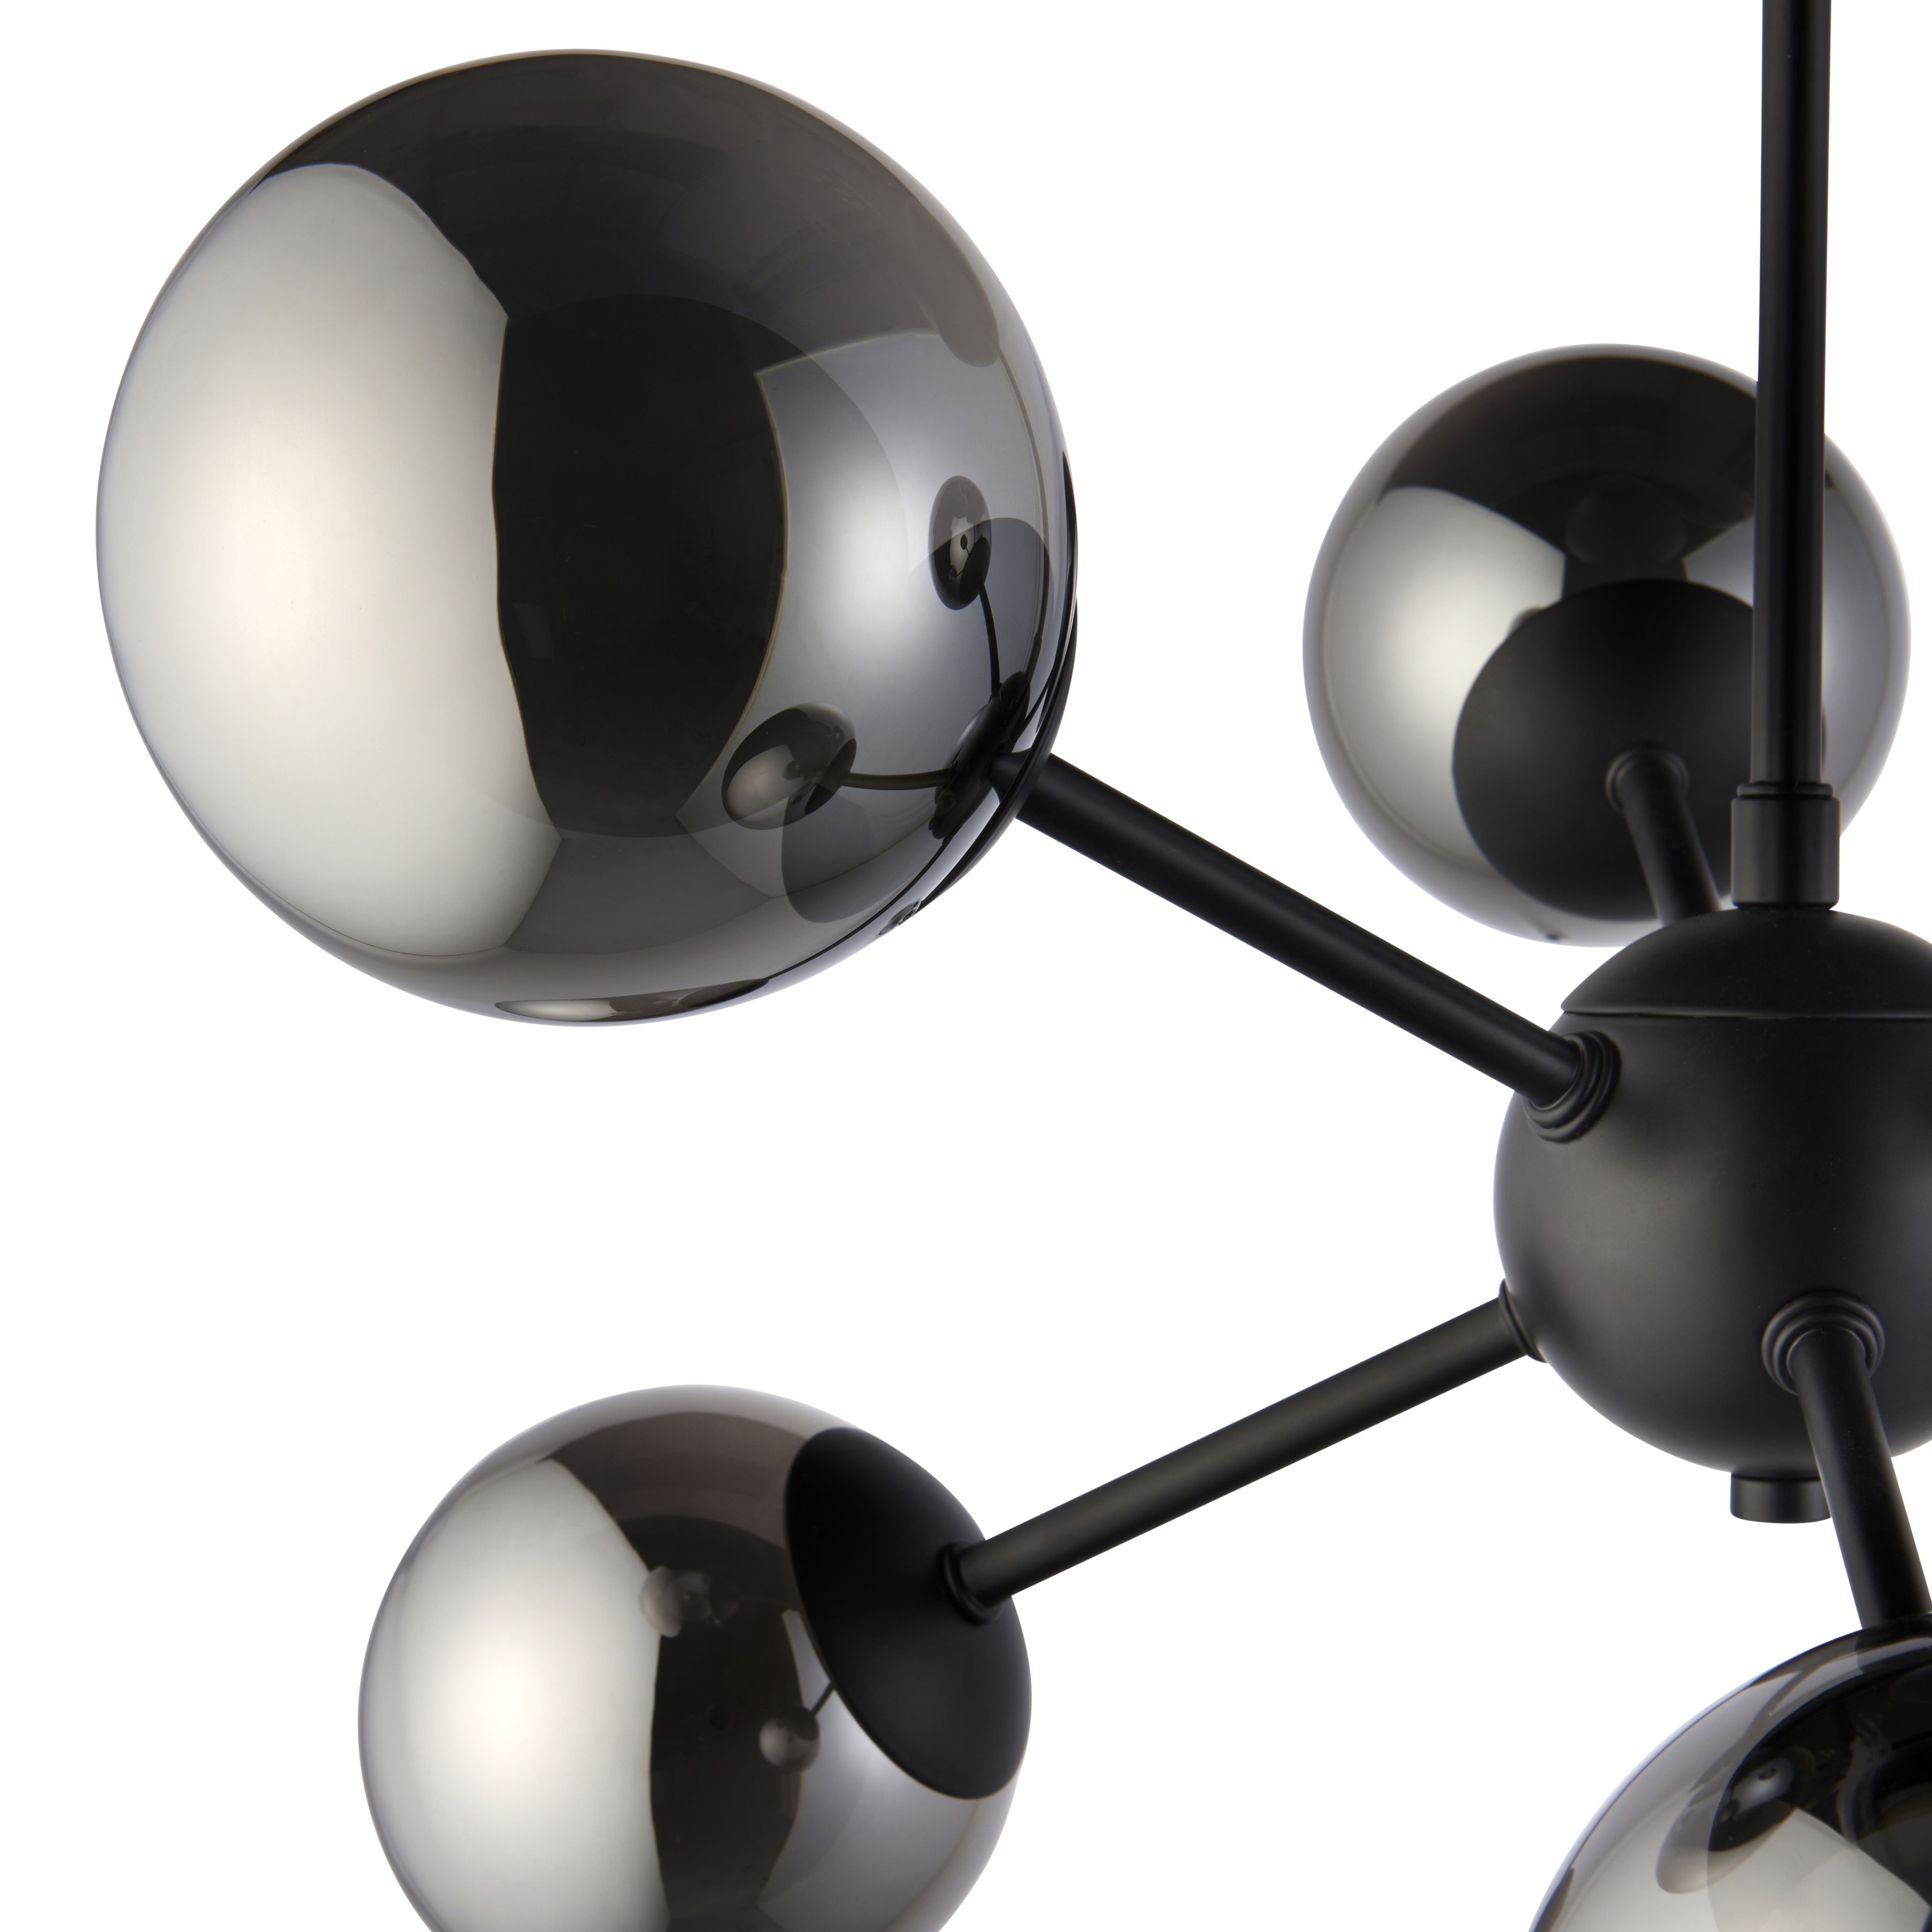 Cole Modern Glass & steel Black 6 Lamp LED Ceiling light